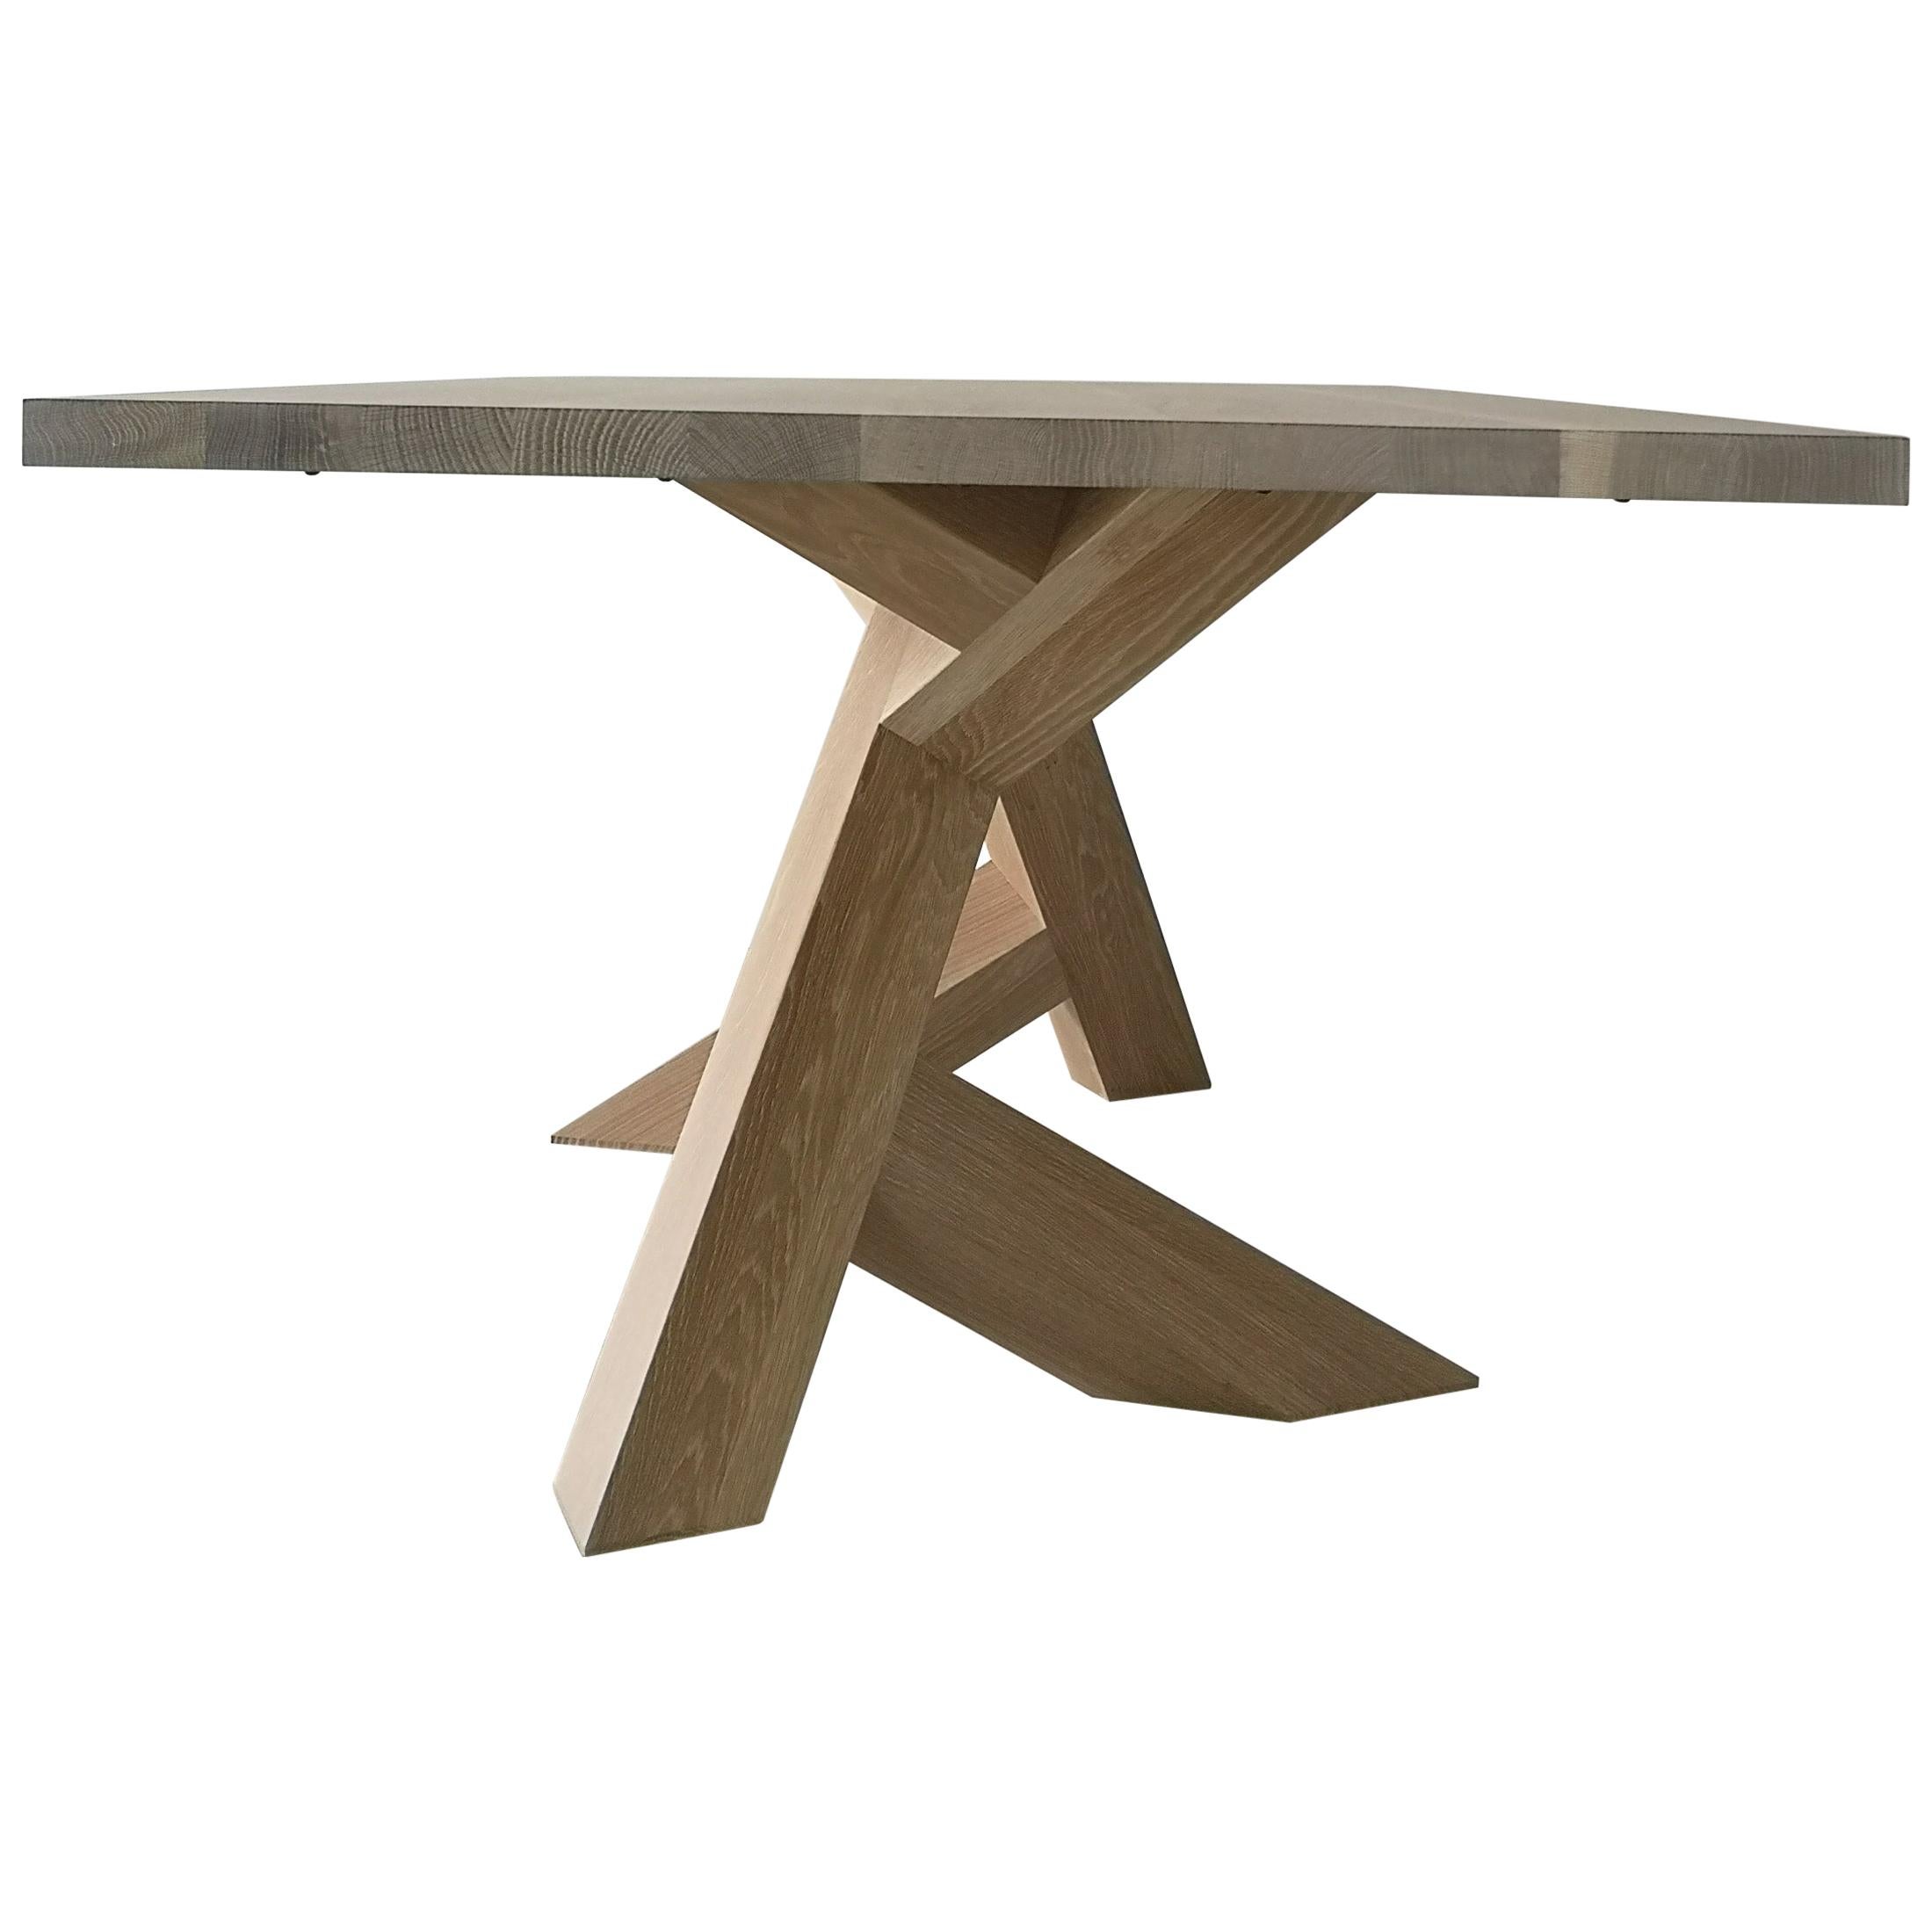 Moderner Esstisch aus Hartholz von Izm Design, Iconoclast